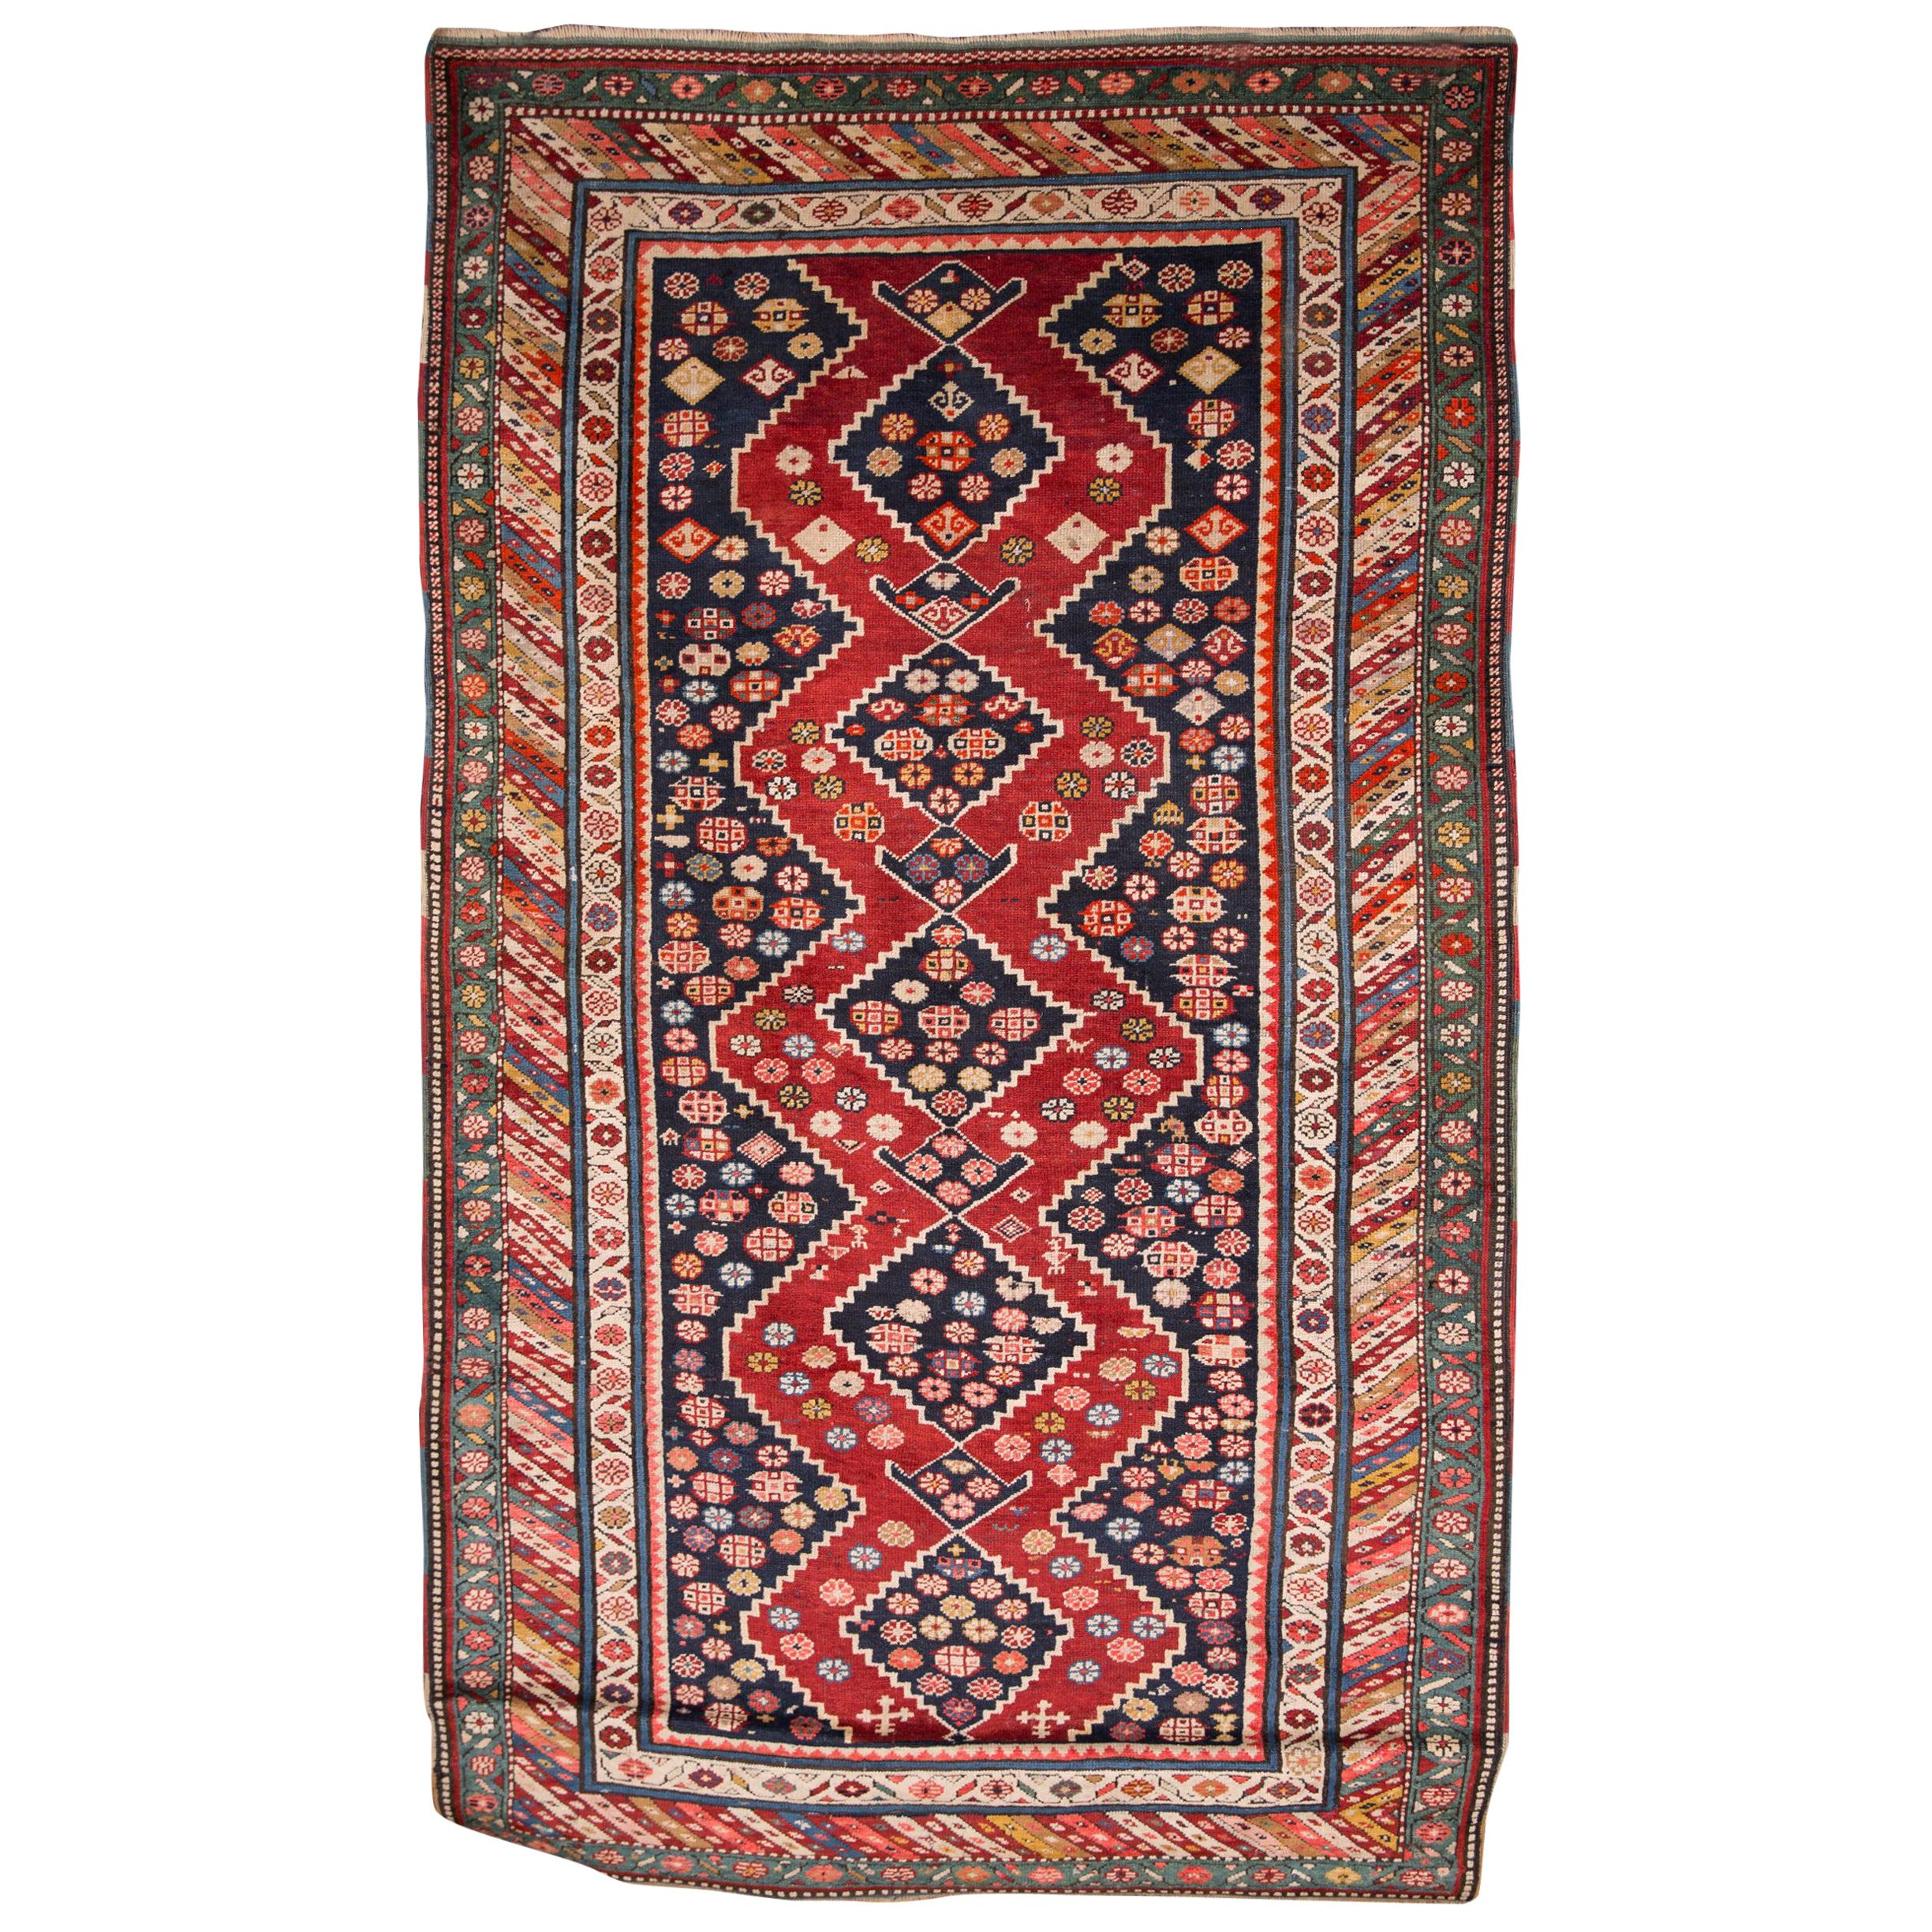 19th Century Antique Kazak Carpet Rug